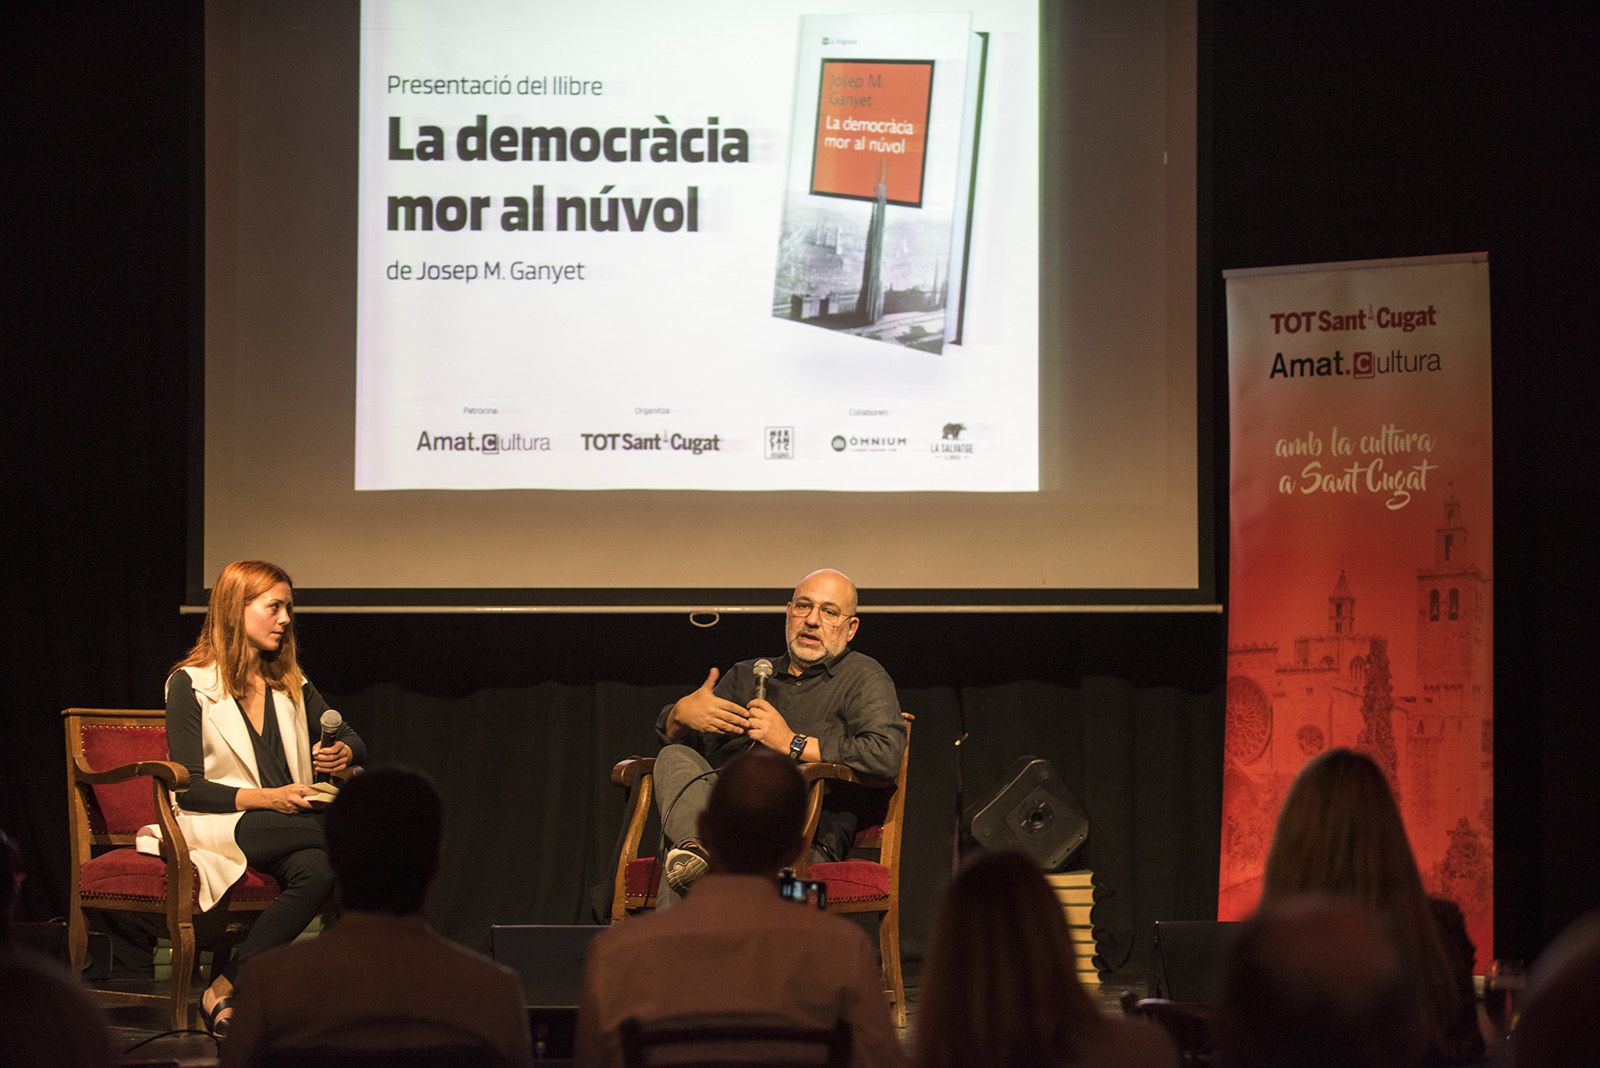 Presentació del llibre 'La democràcia mor al núvol' de Josep M. Ganyet. FOTO: Bernat Millet.